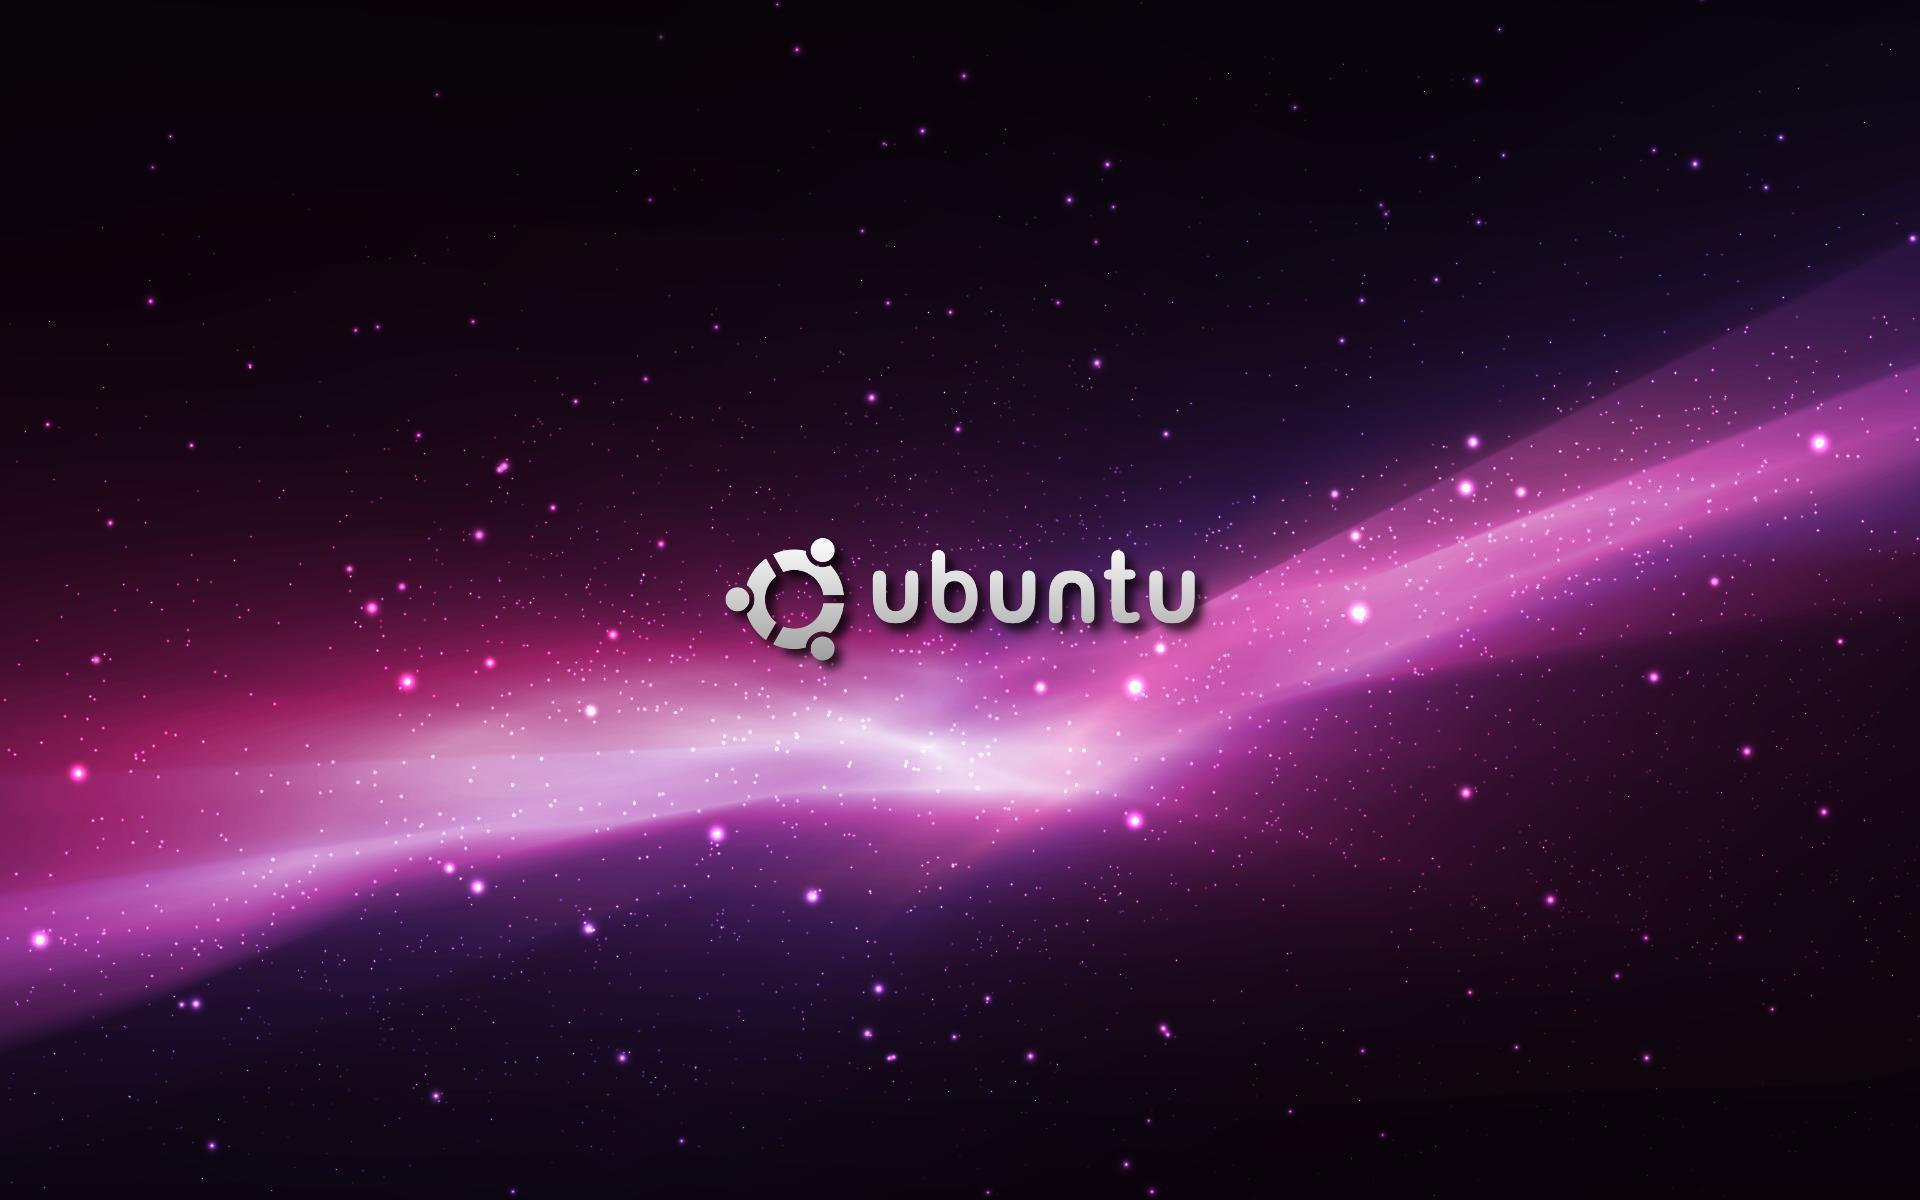 Ubuntu Desktop Wallpapers - WallpaperSafari